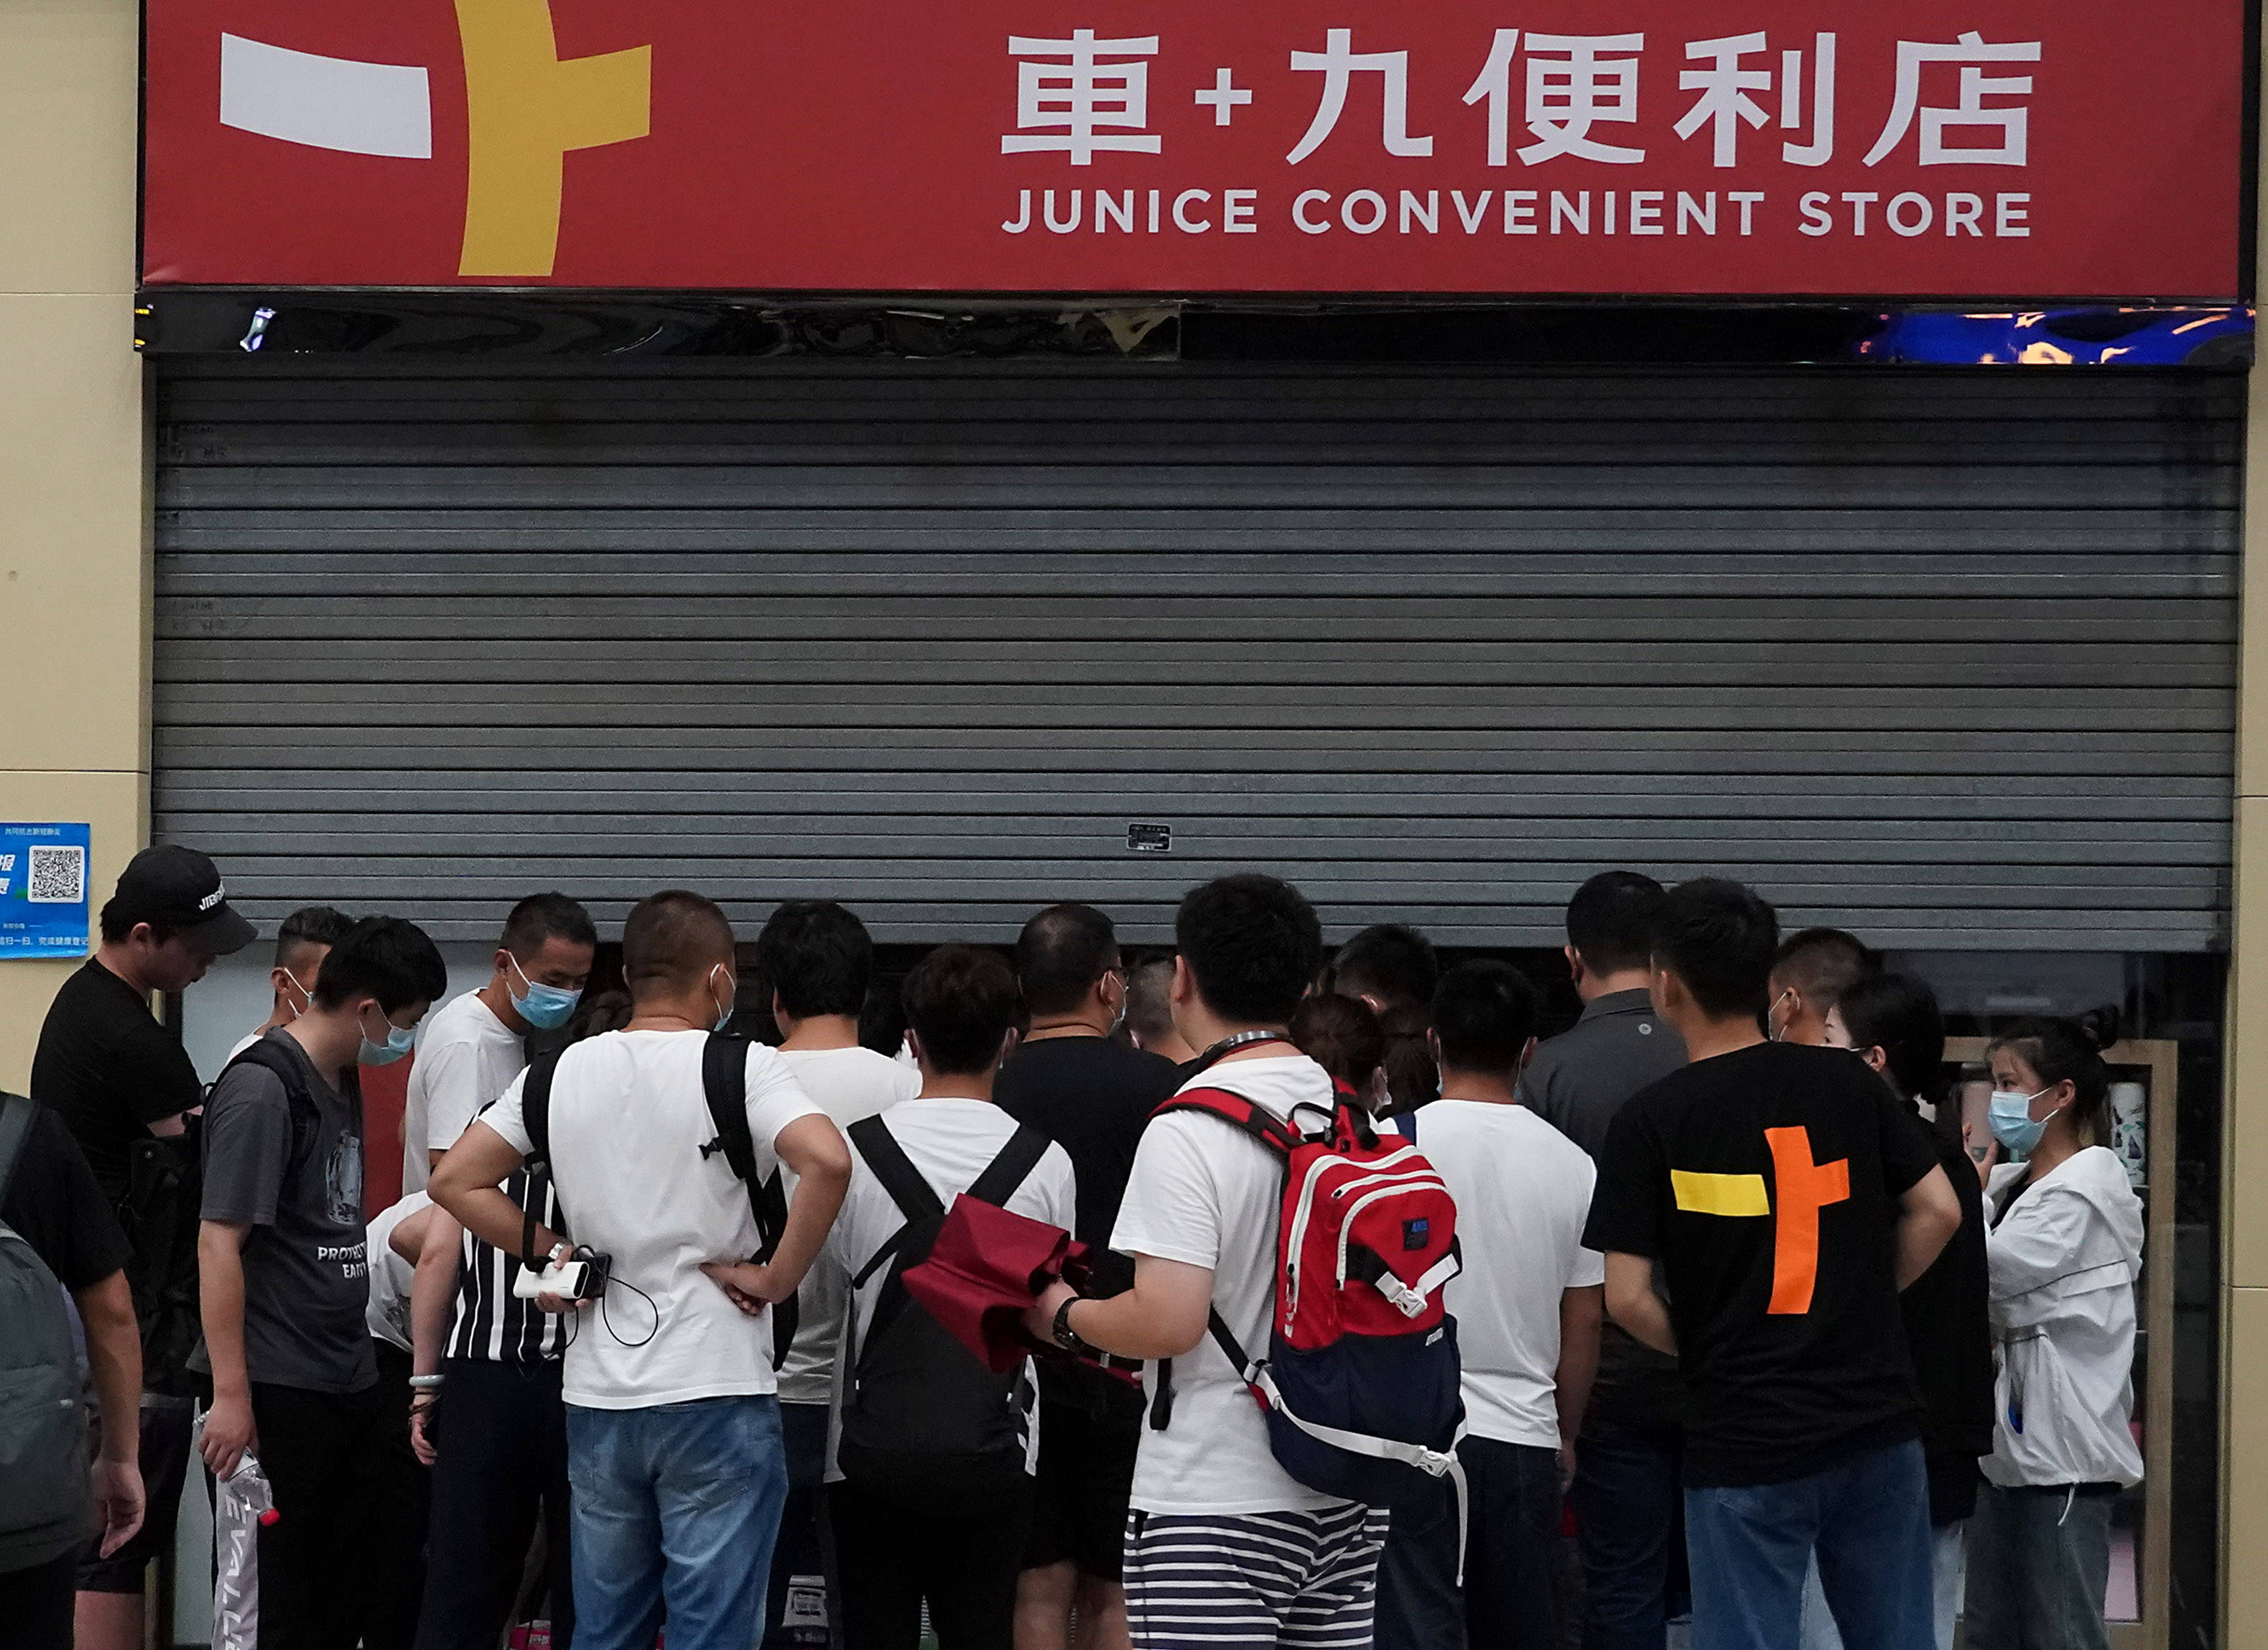 7月20日,滞留旅客在郑州东站一家便利店外排队购物